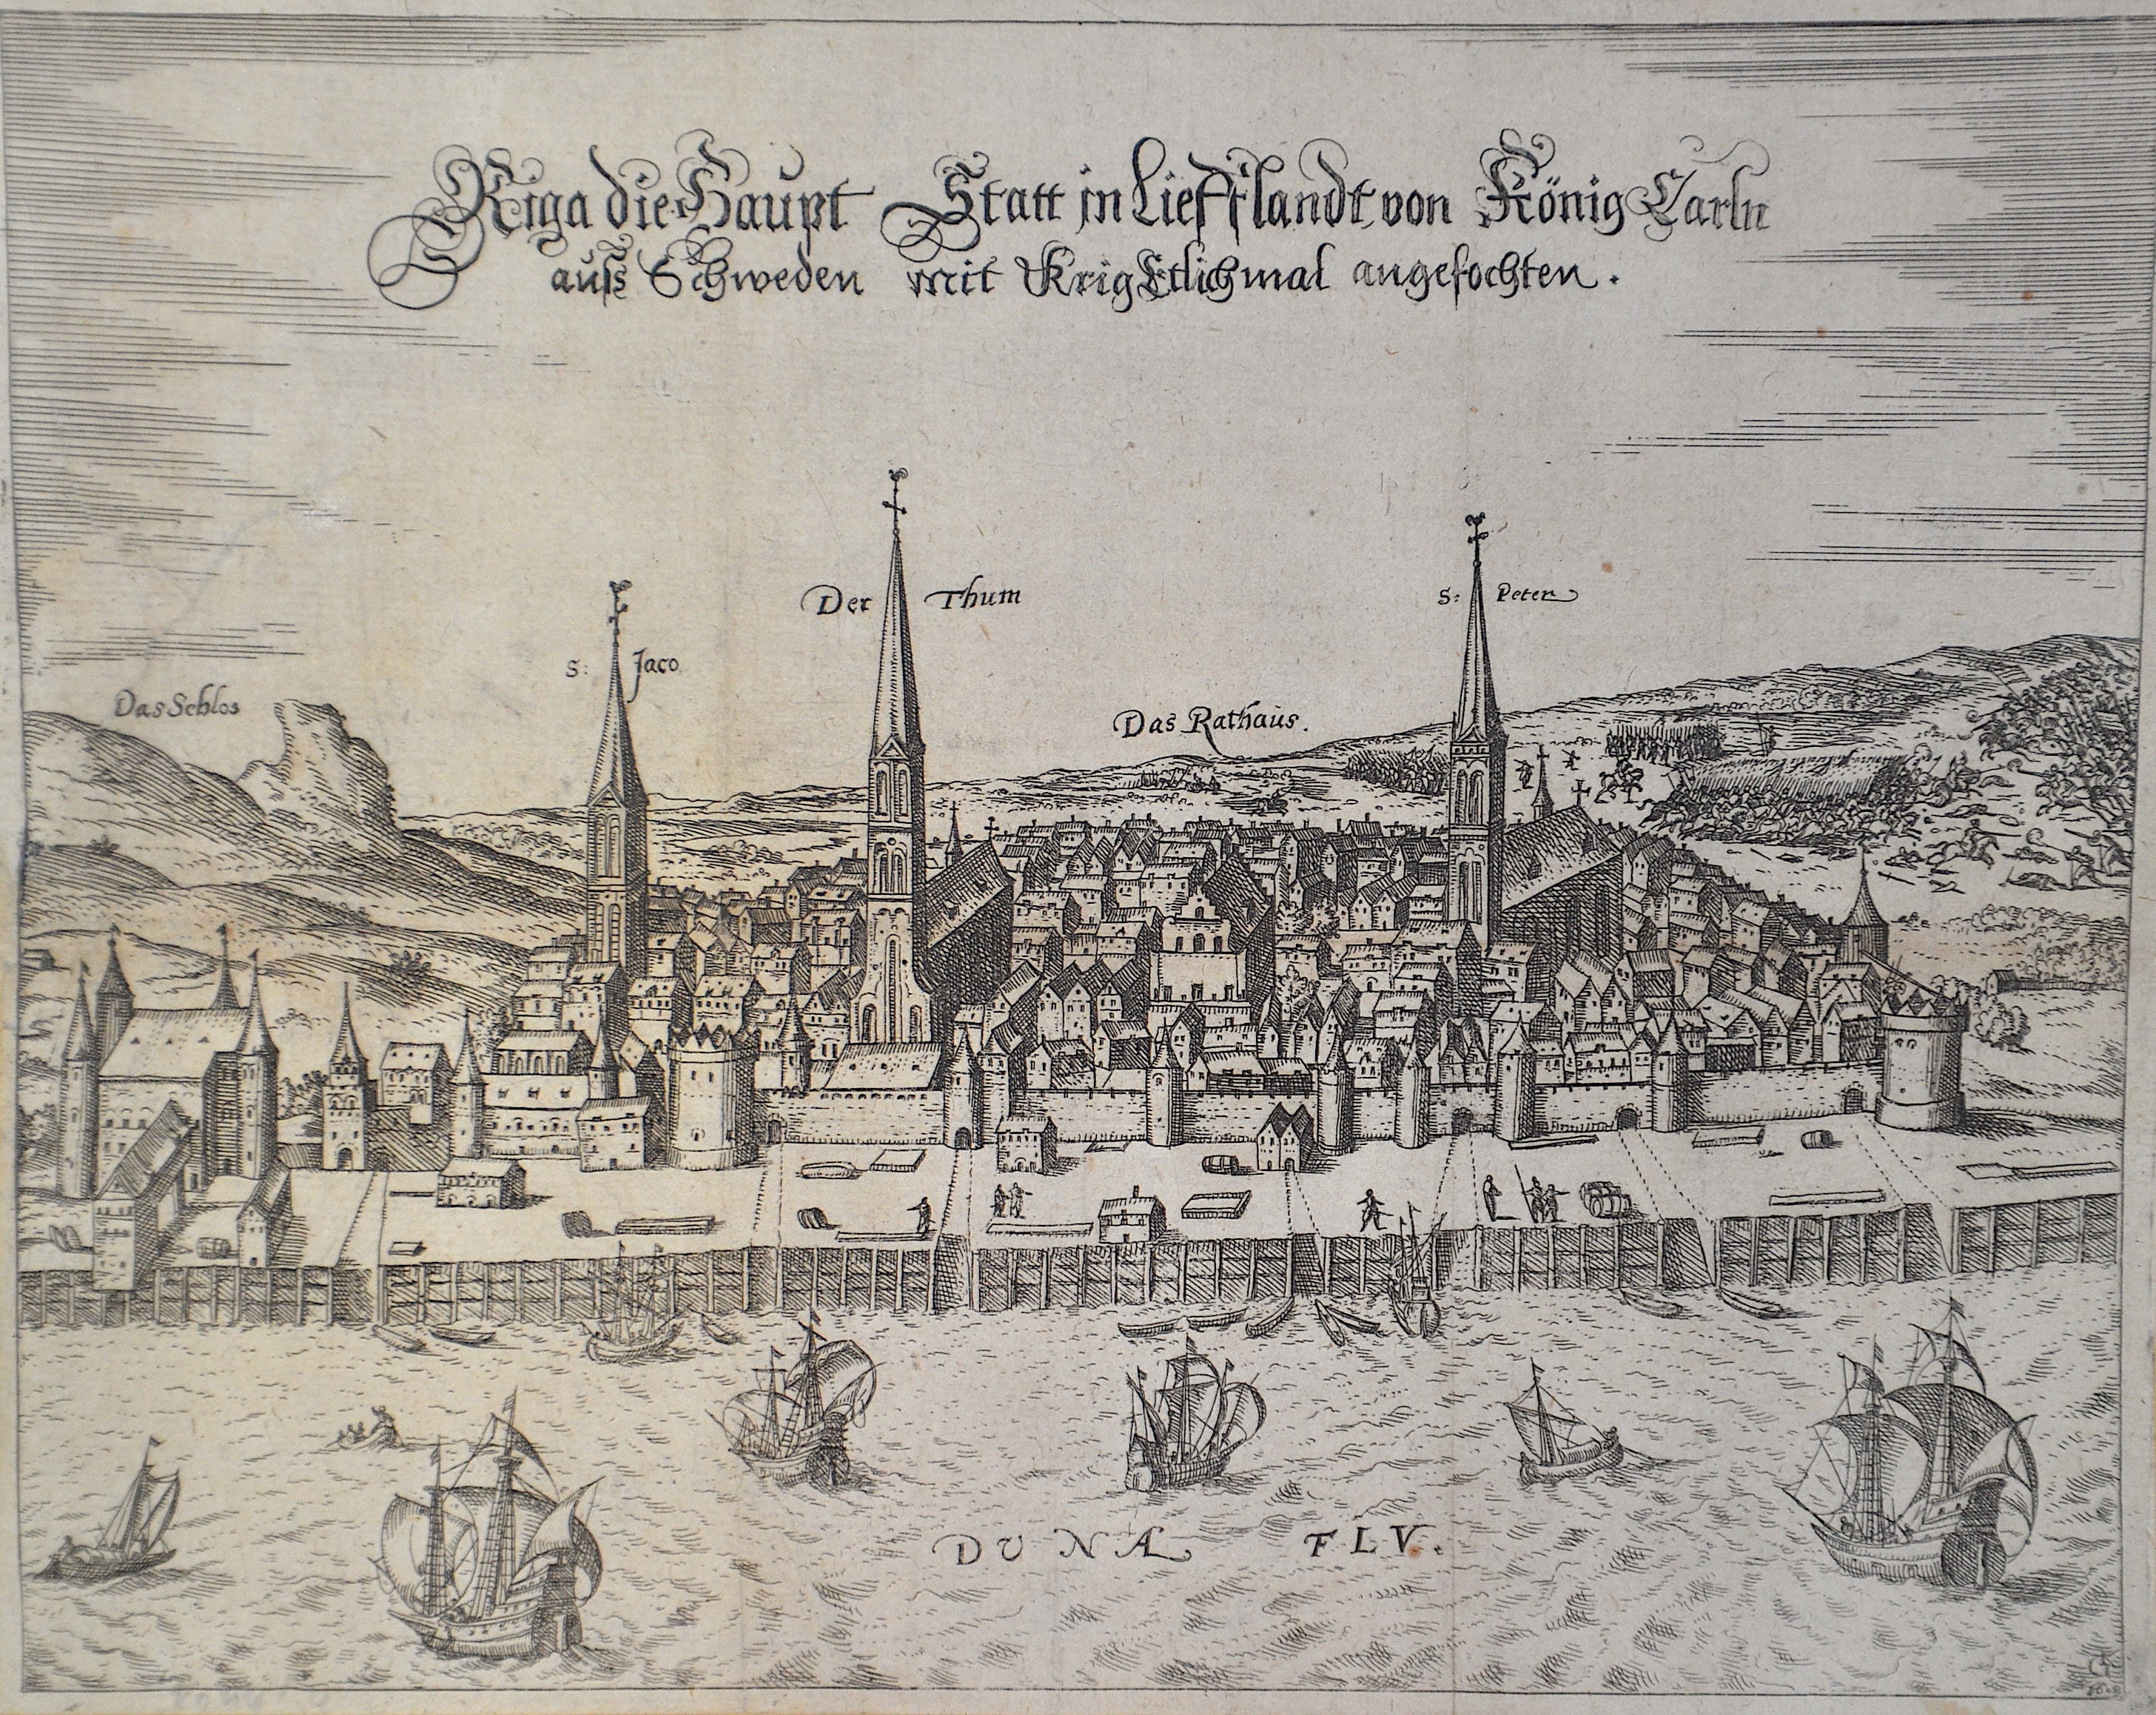 Riga die Haupt Statt in Lief Flandt von König Carln auß Schweden mit Krig Etlichmal angefochten.